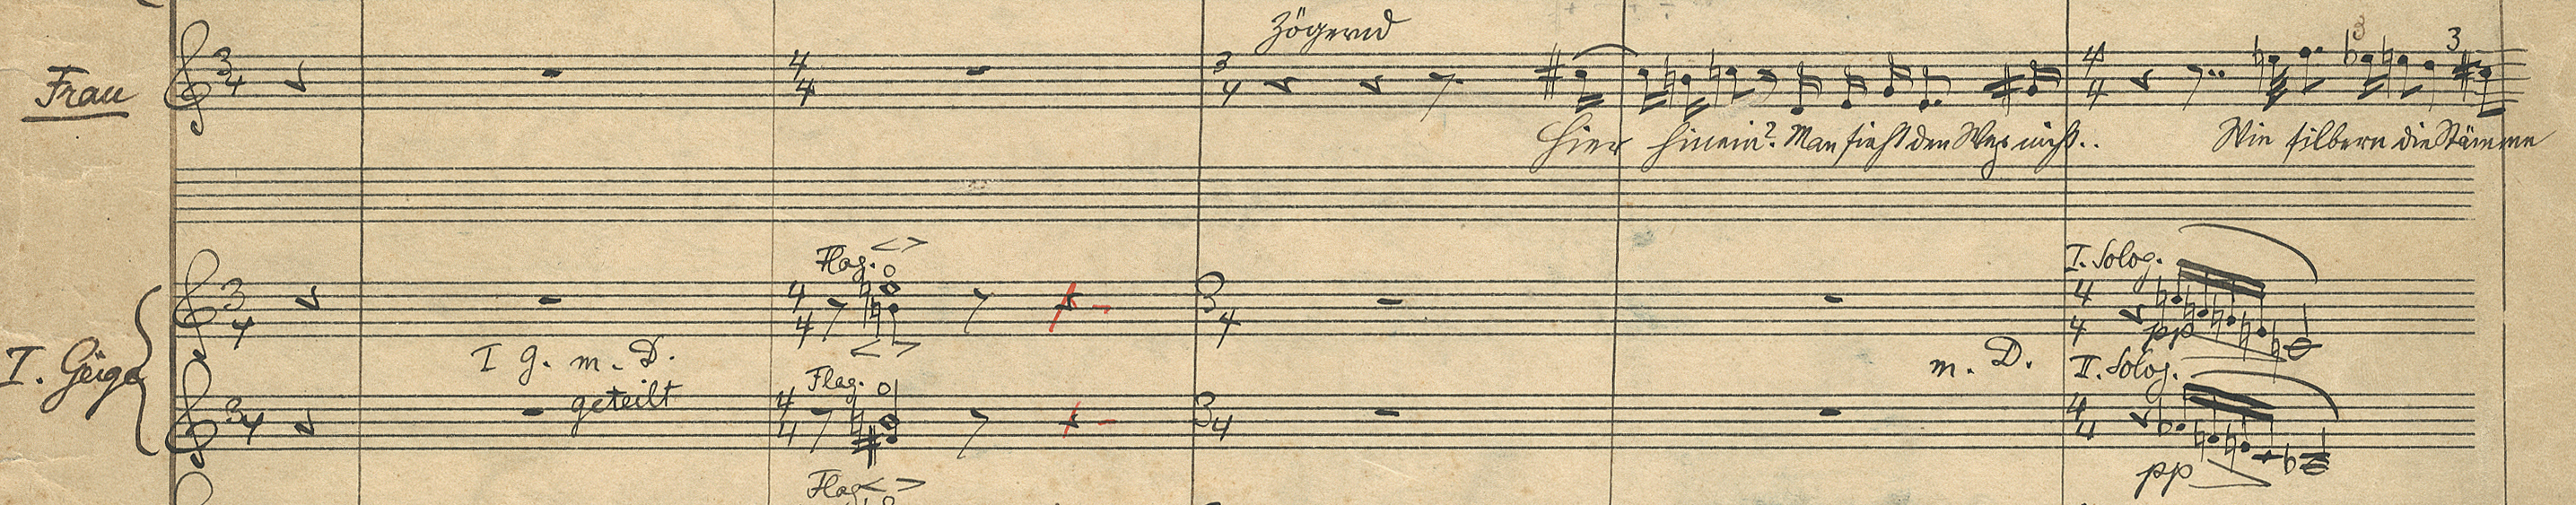 Expectation op. 17, copy of score | Arnold Schönberg Center, Wien